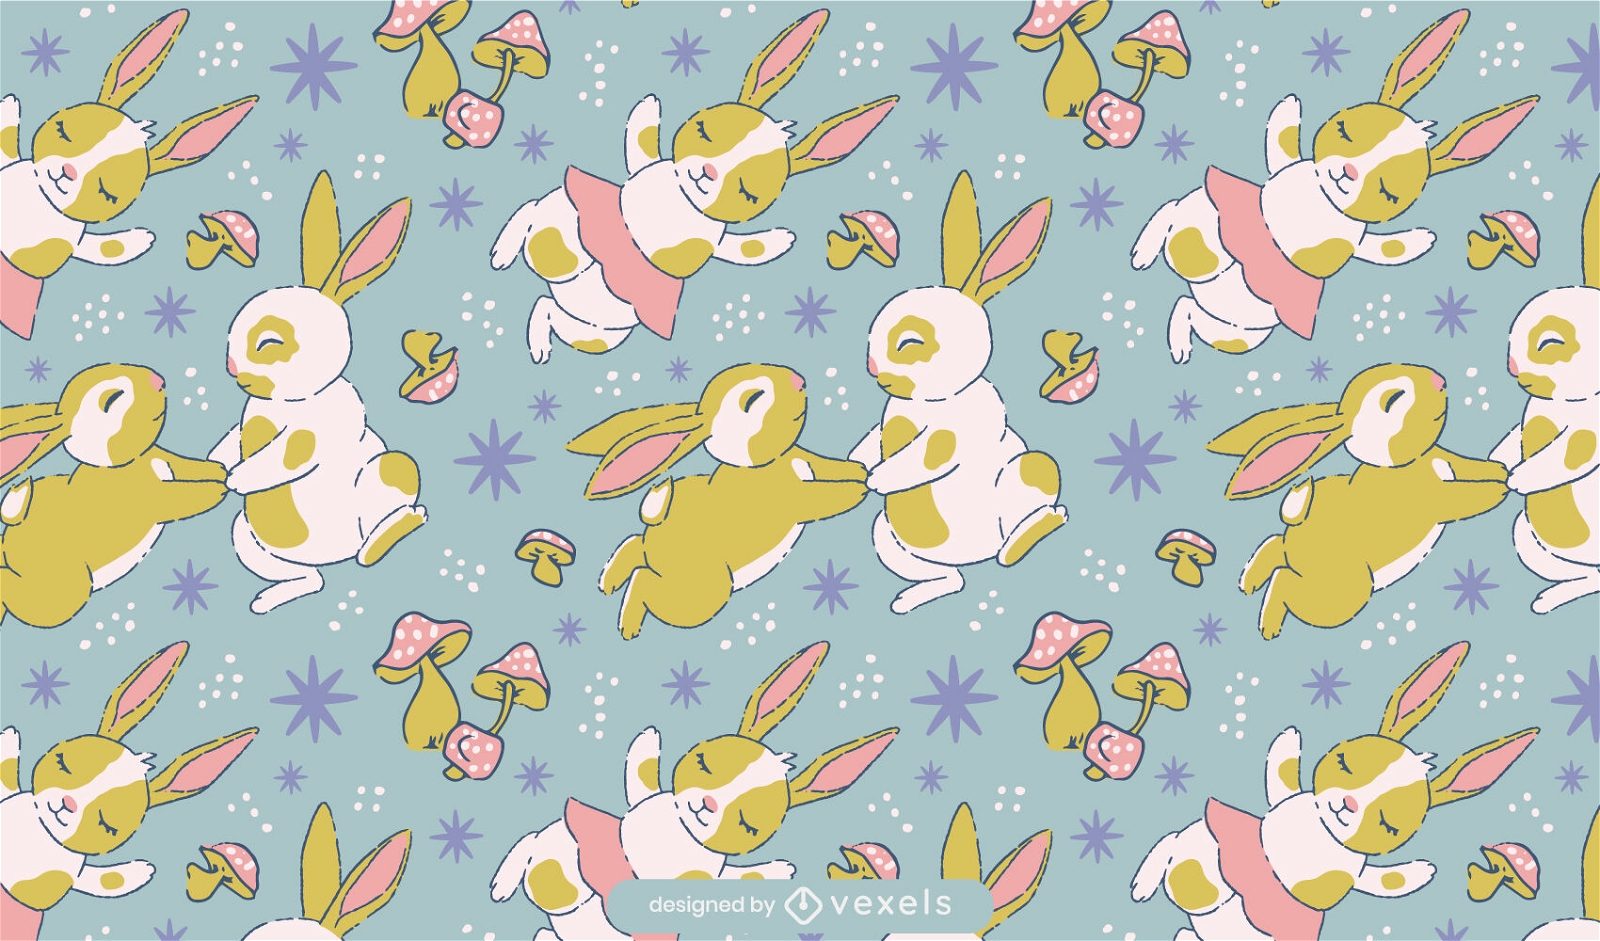 Cute dancing rabbits pattern design